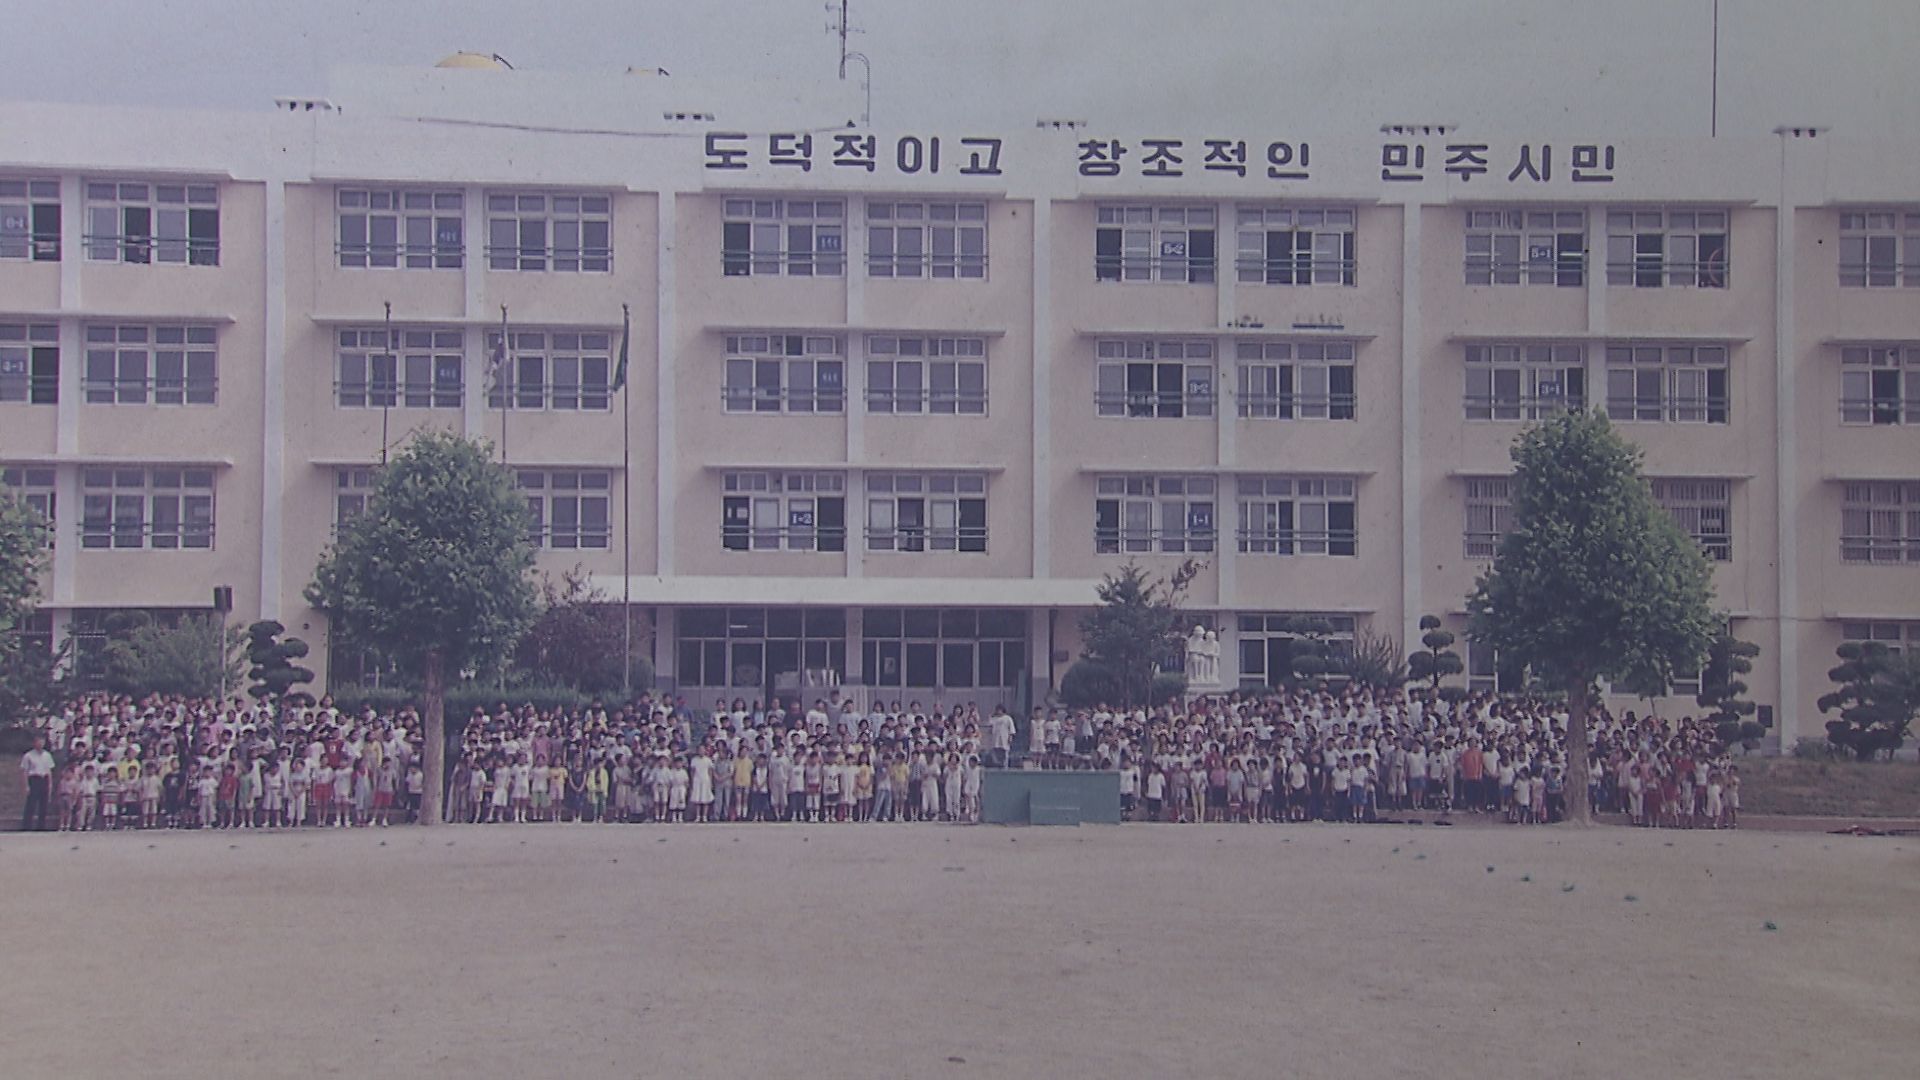 조야초등학교 복도에 걸려있는 옛날 사진입니다. 촬영 시점은 1980년대쯤으로 추정되는데, 보시다시피 아이들이 많습니다.